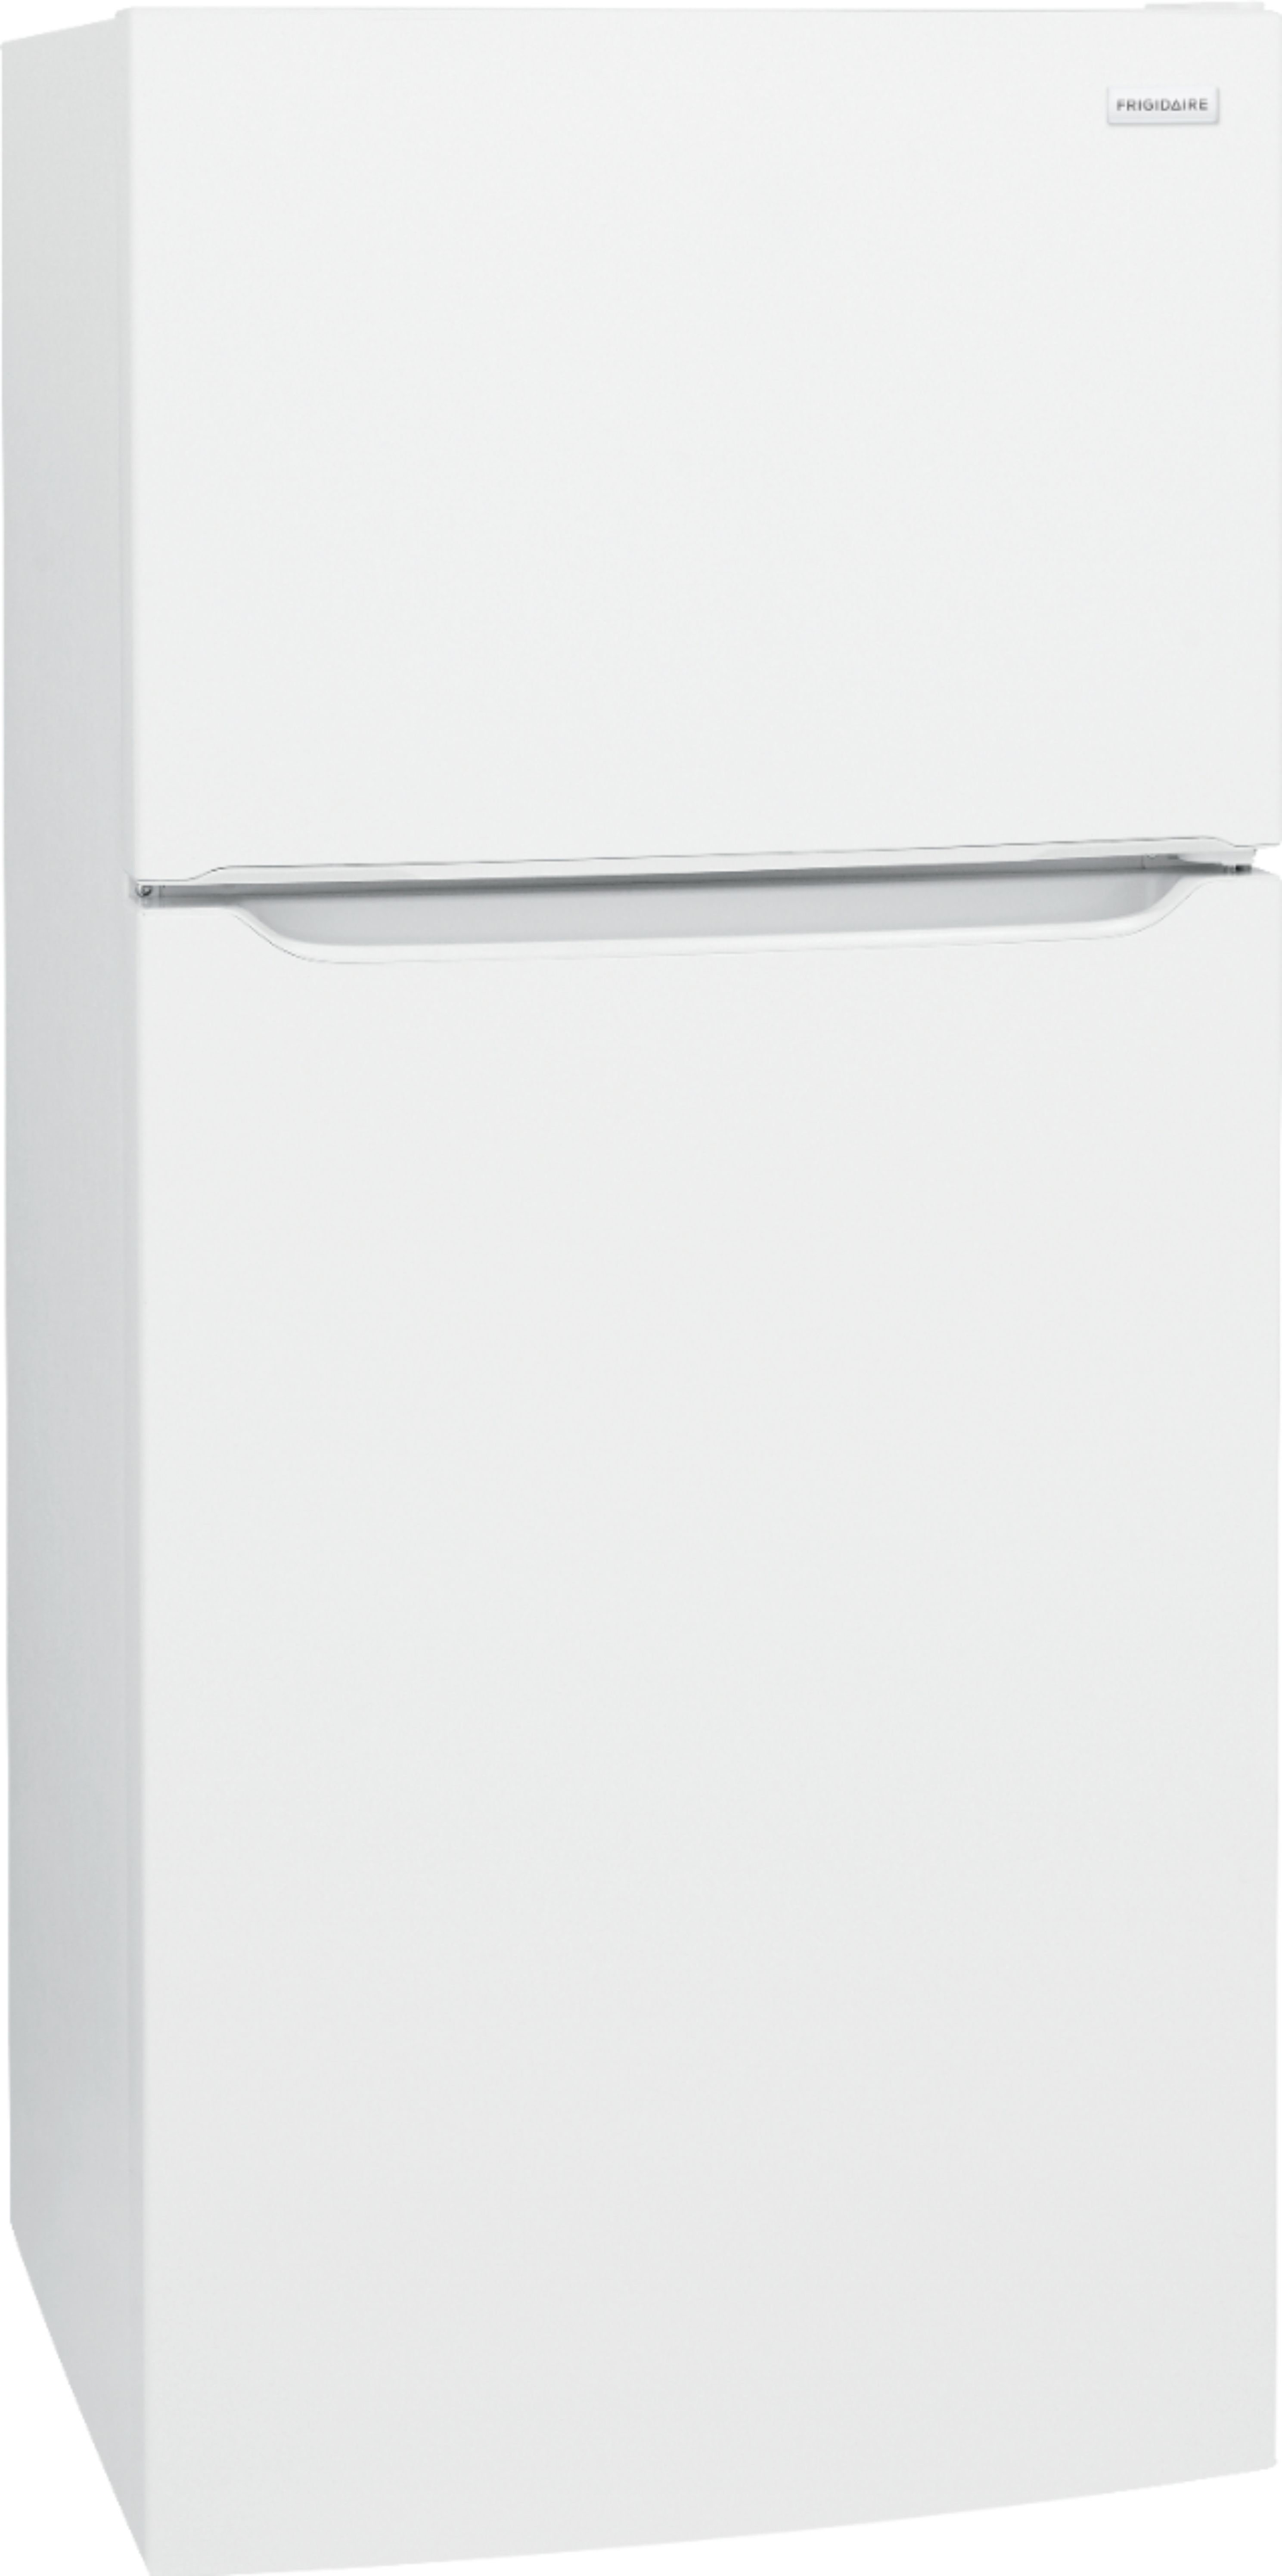 Angle View: Frigidaire - 18.3 Cu. Ft. Top-Freezer Refrigerator - White